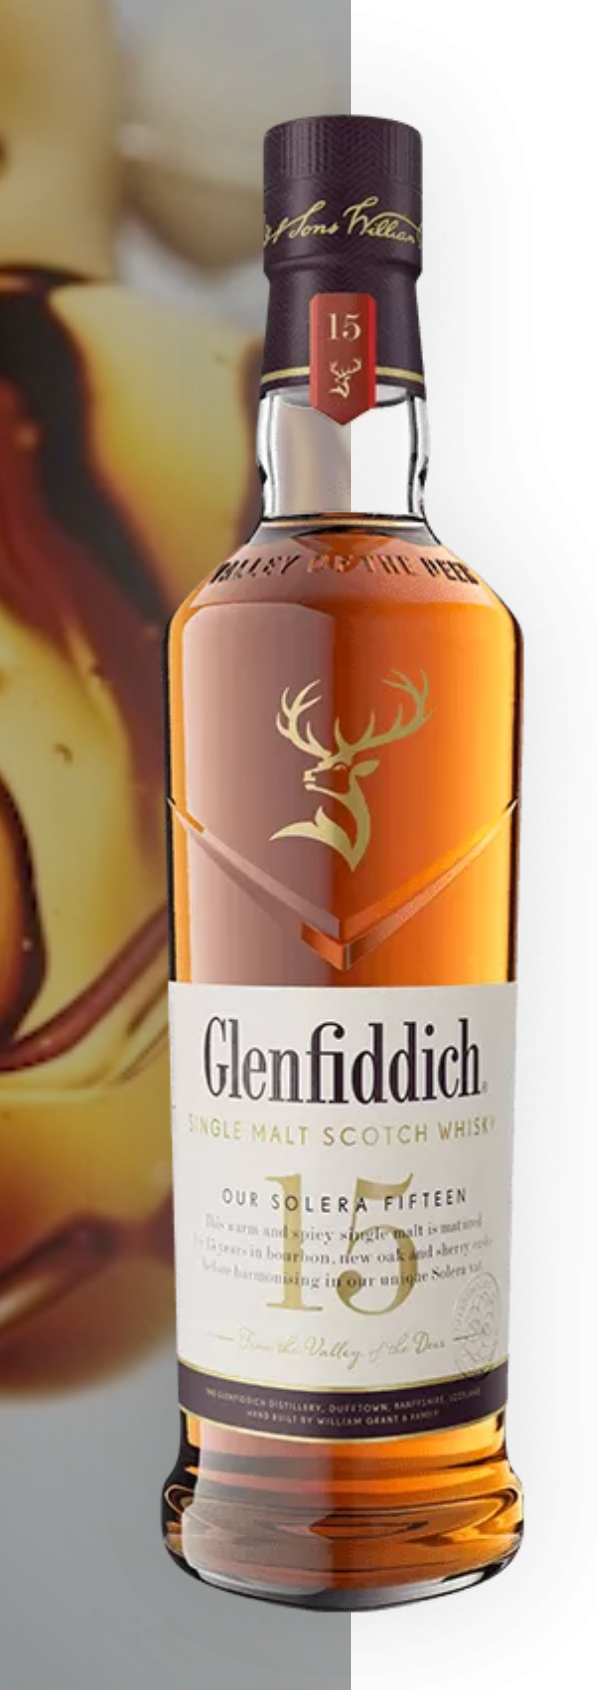 Glenfiddich 15YRS Single Malt Scotch Whisky 750ML R